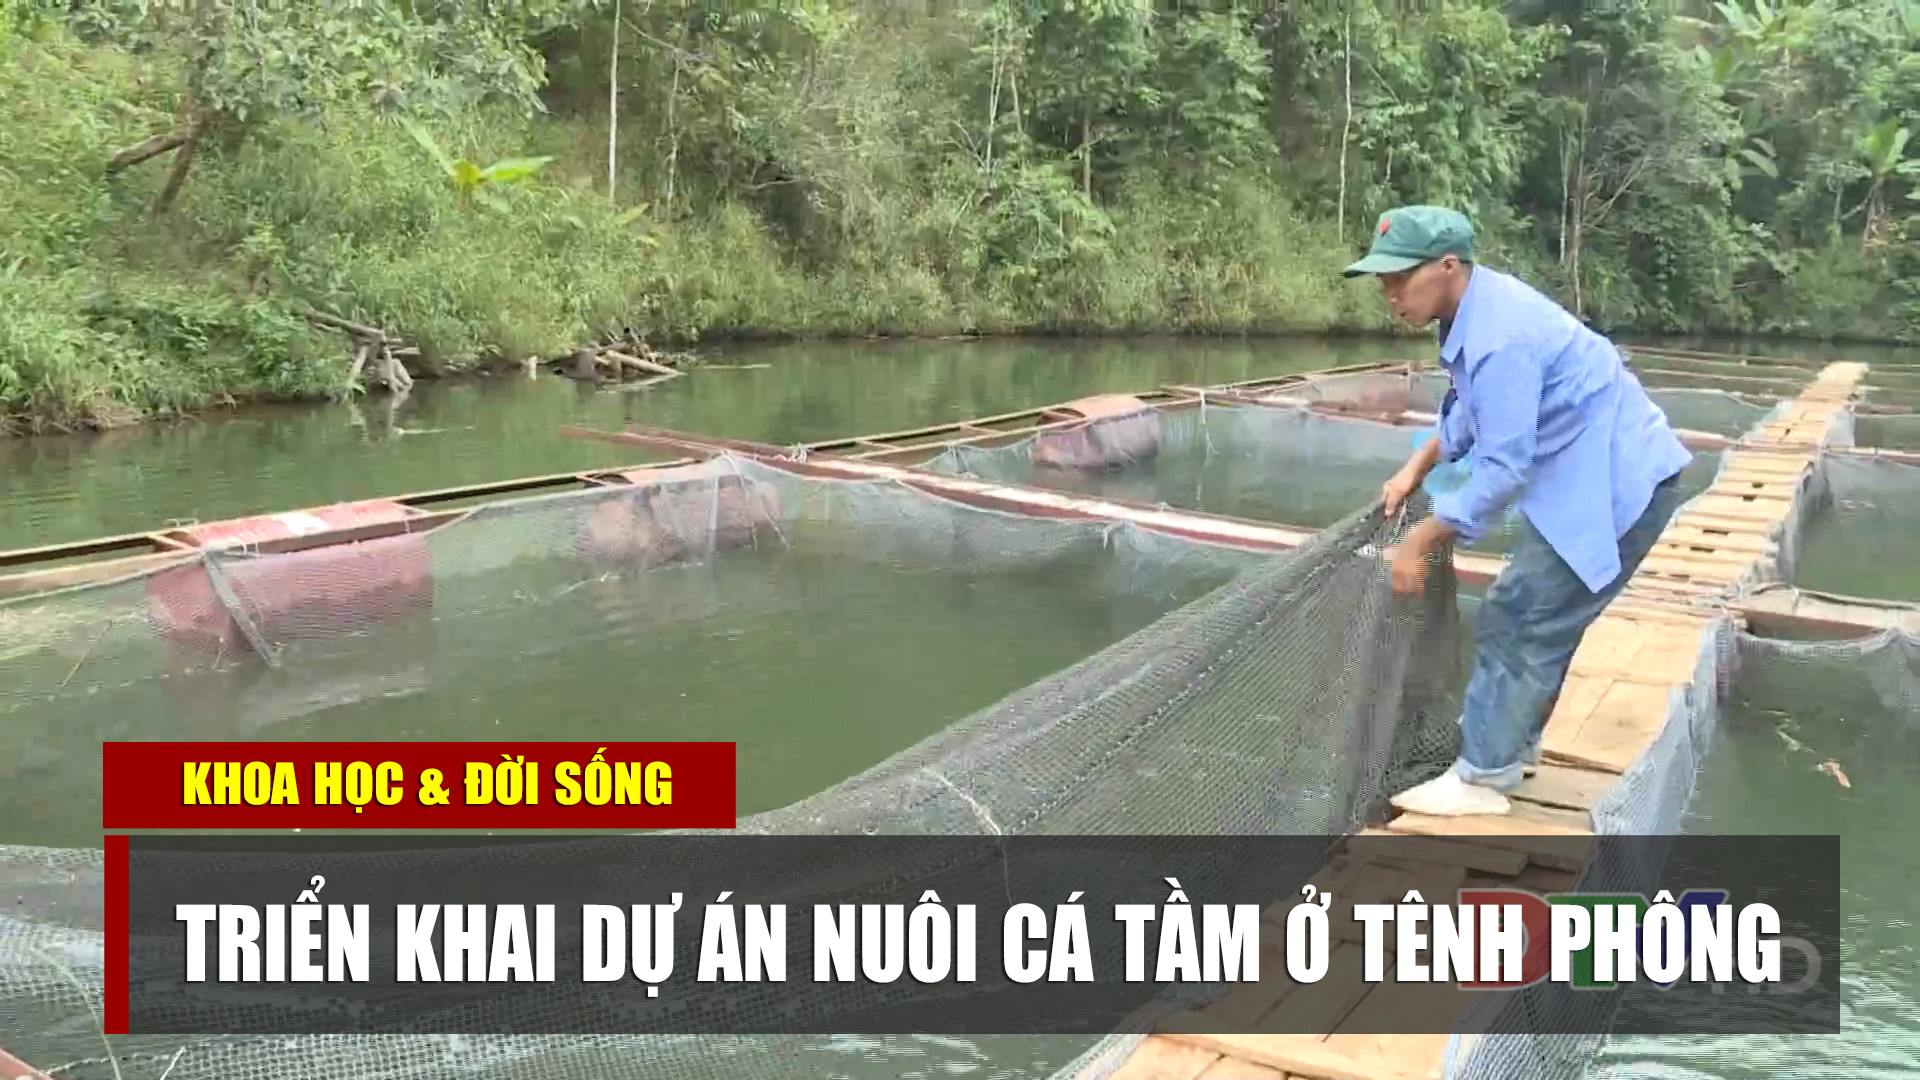 Triển khai dự án nuôi cá tầm ở Tênh Phông